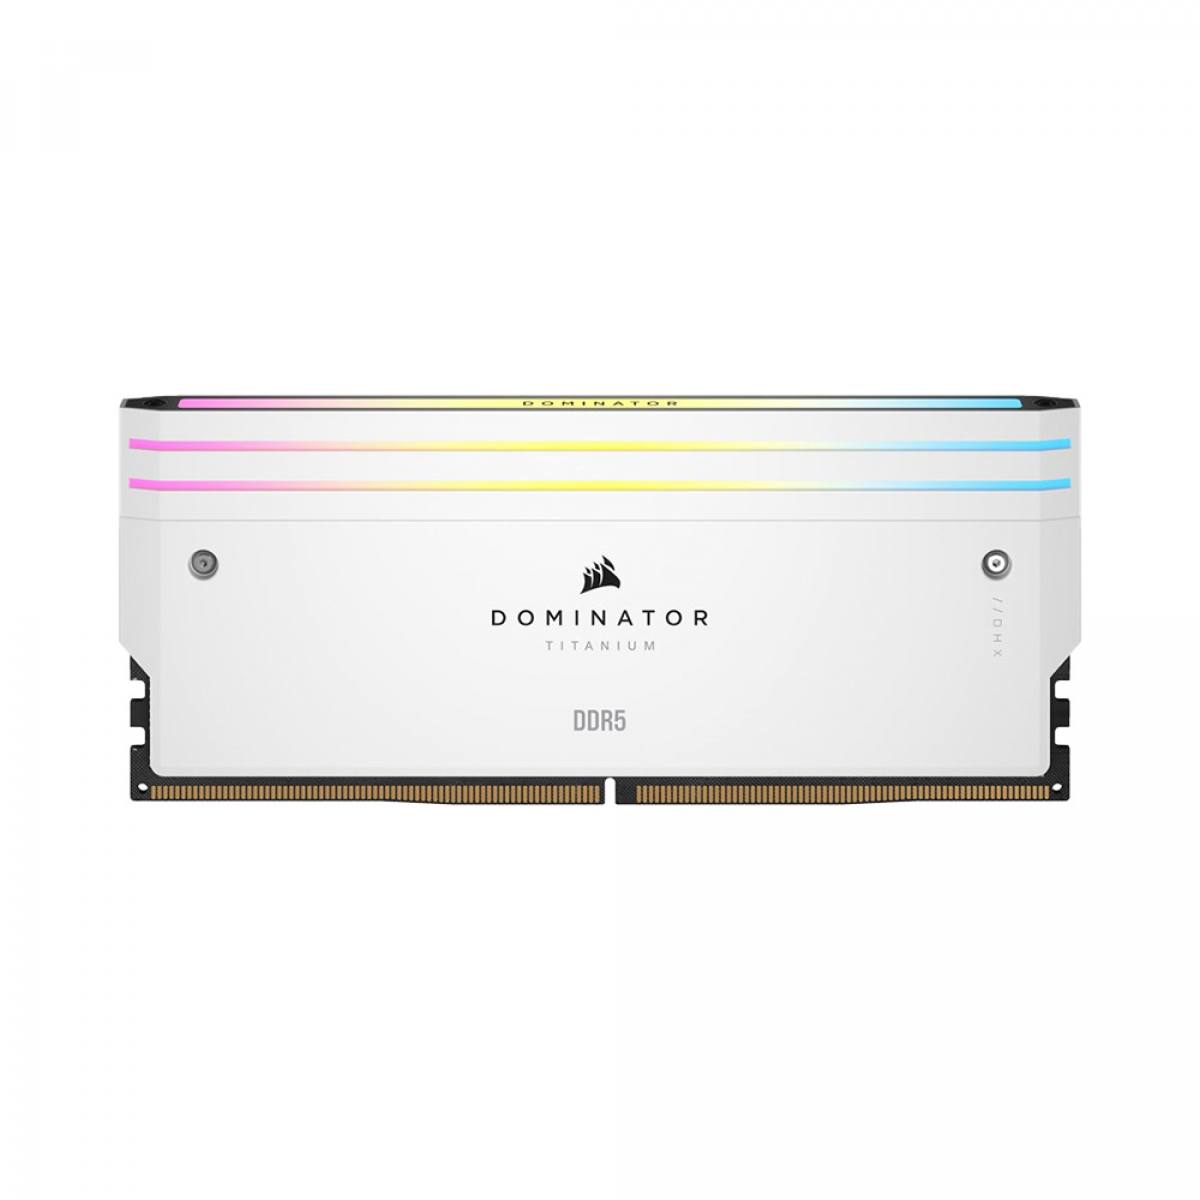 RAM DOMINATOR TITANIUM Black HeatspreaderDDR5, 6400MT/s 64GB 2x32GB DIMM, XMP 3.0, RGB LED, 1.4V